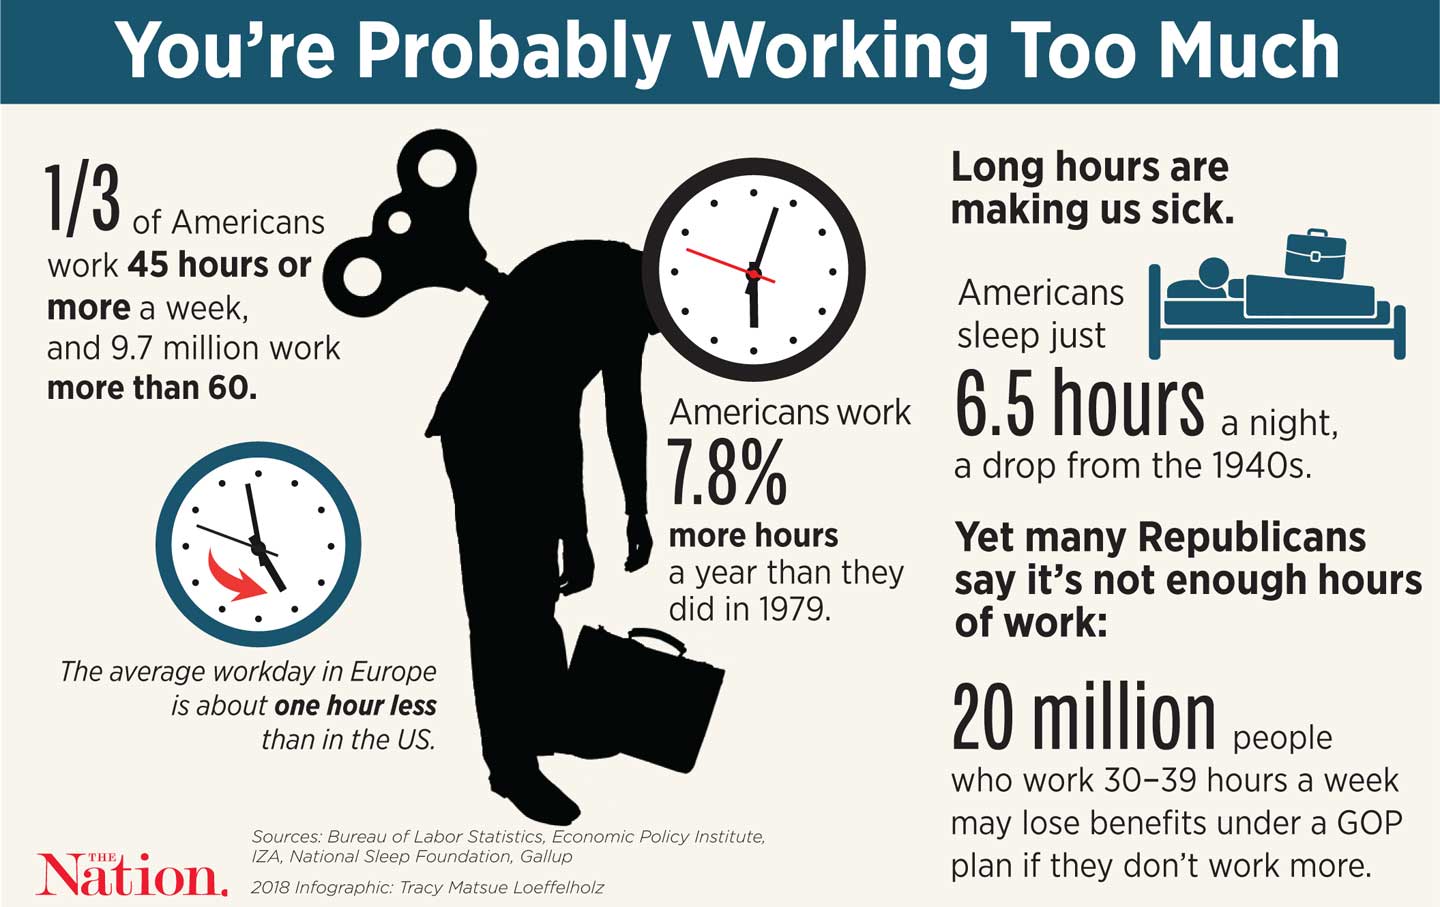 ¿Cuántas horas trabajas a la semana?? startupassembly.co